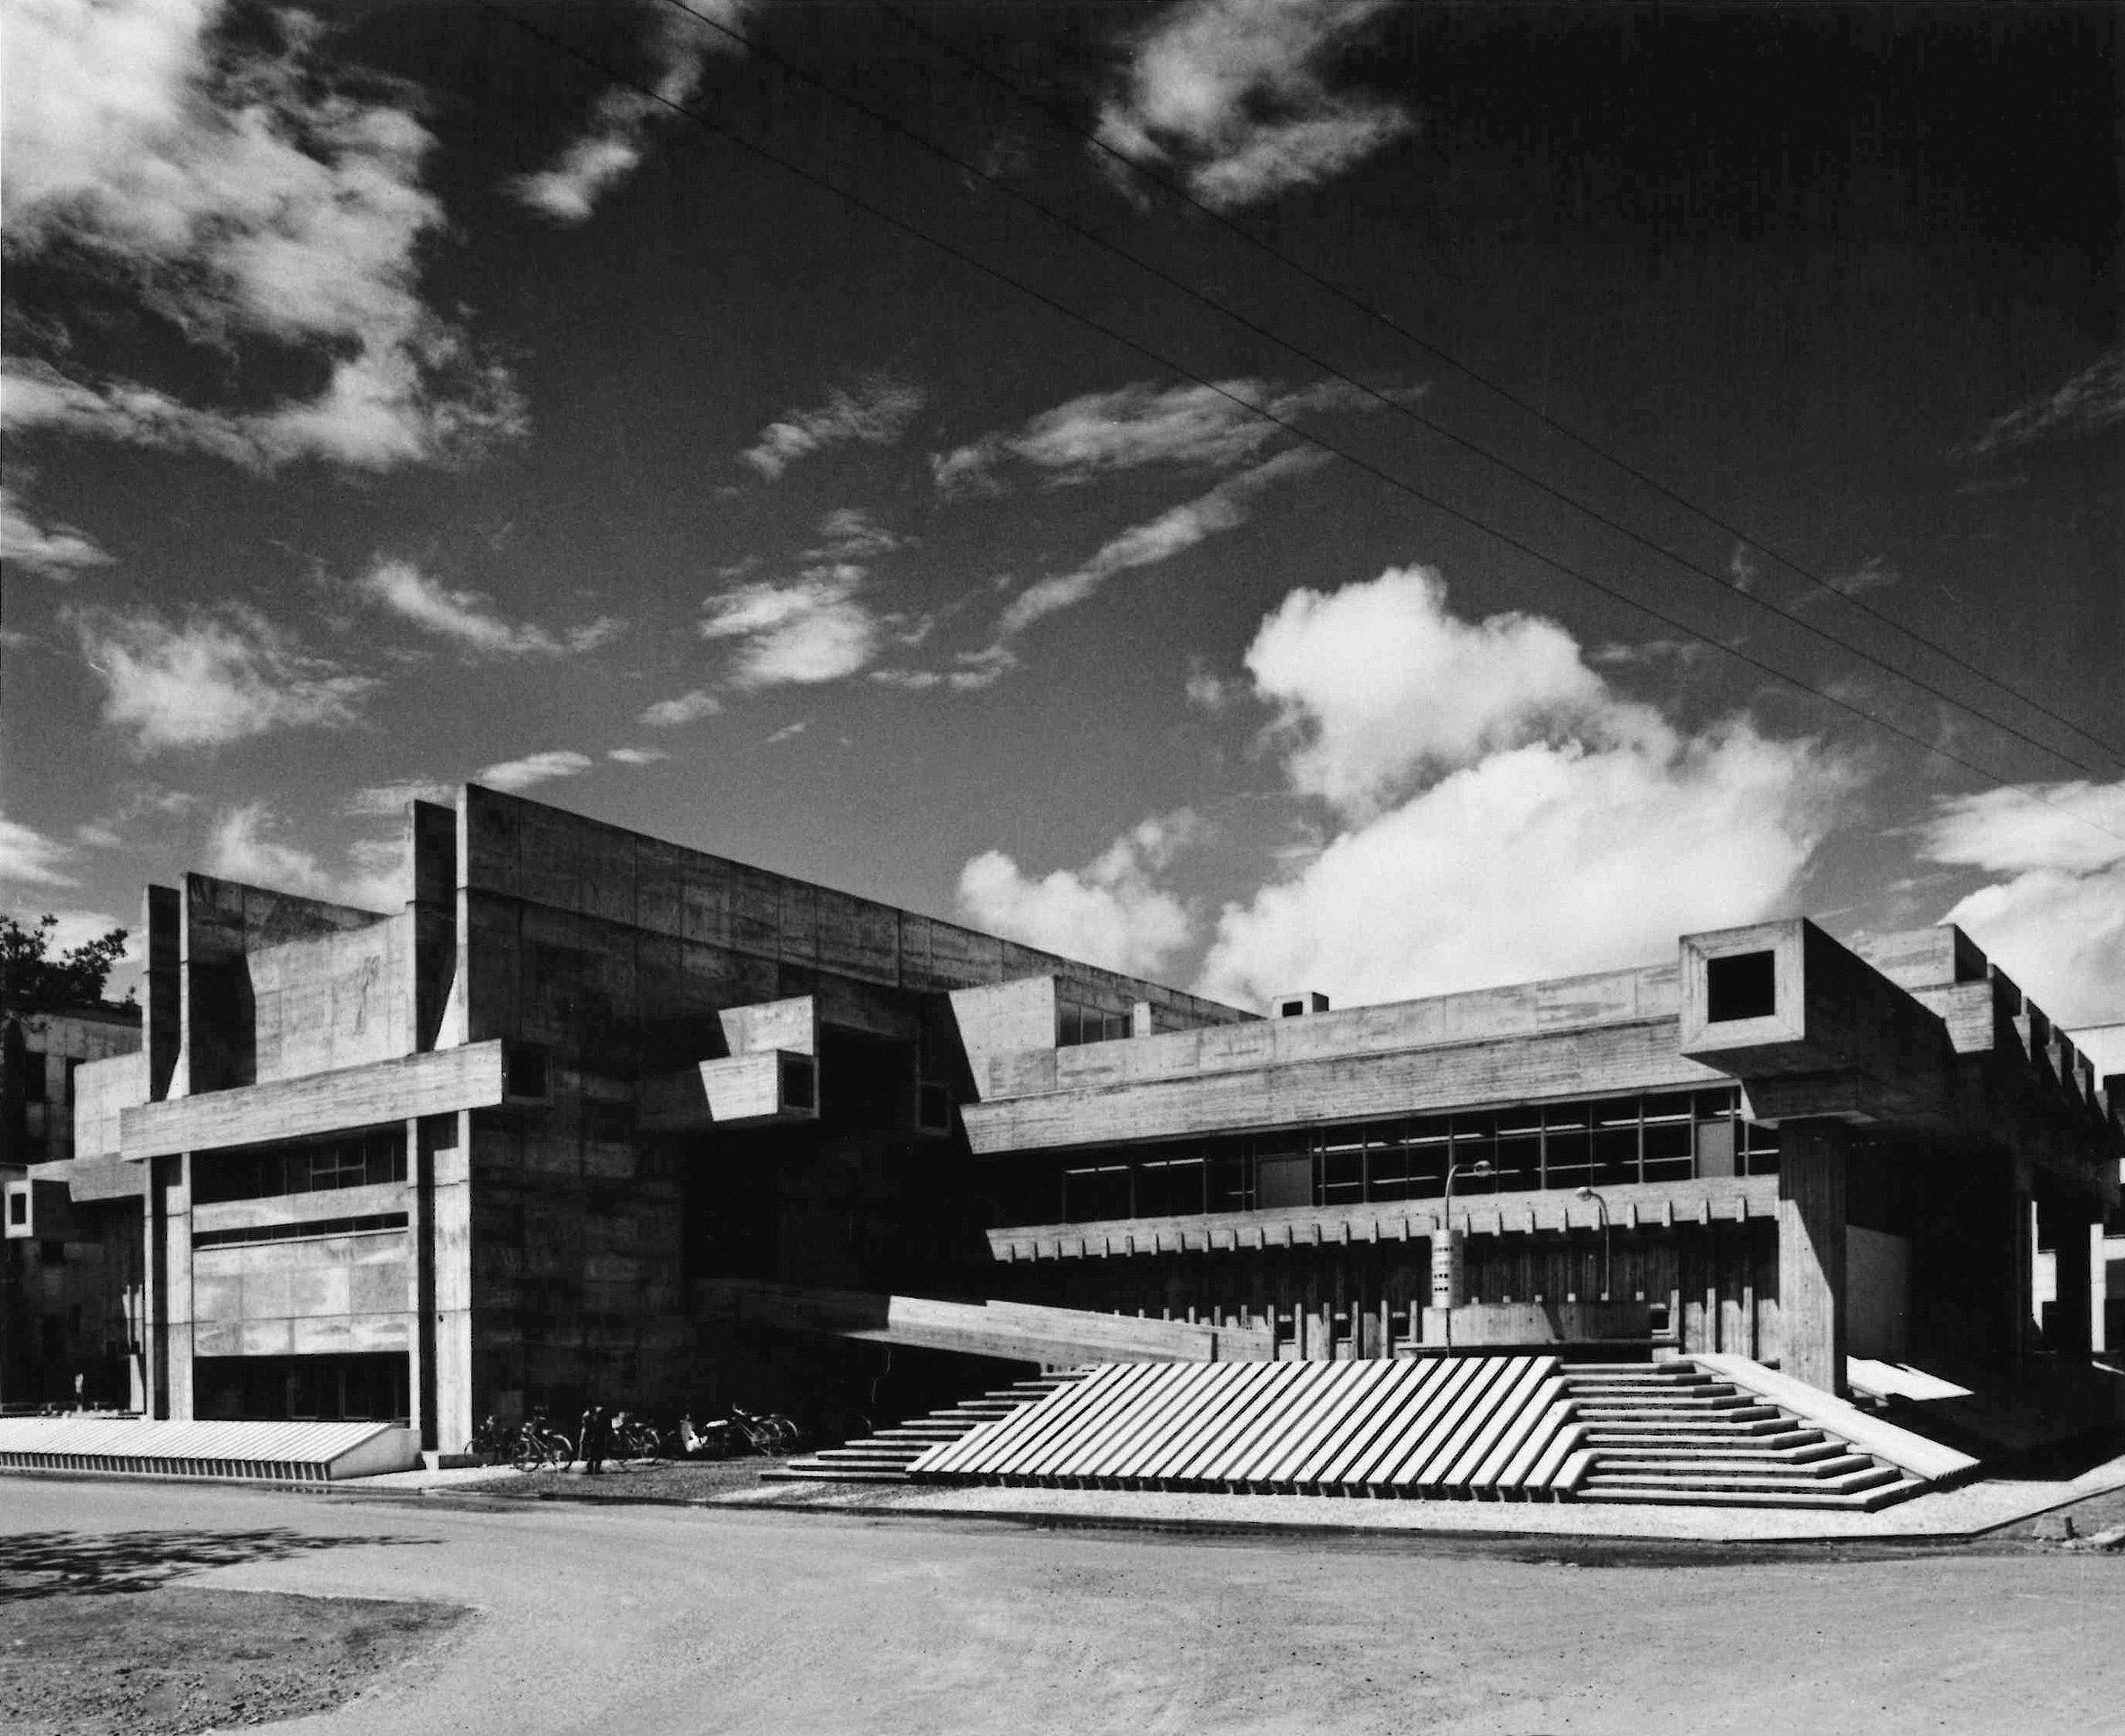 Ōita Prefectural Library by Arata Isozaki winner of 2019 Pritzker Architecture Prize 